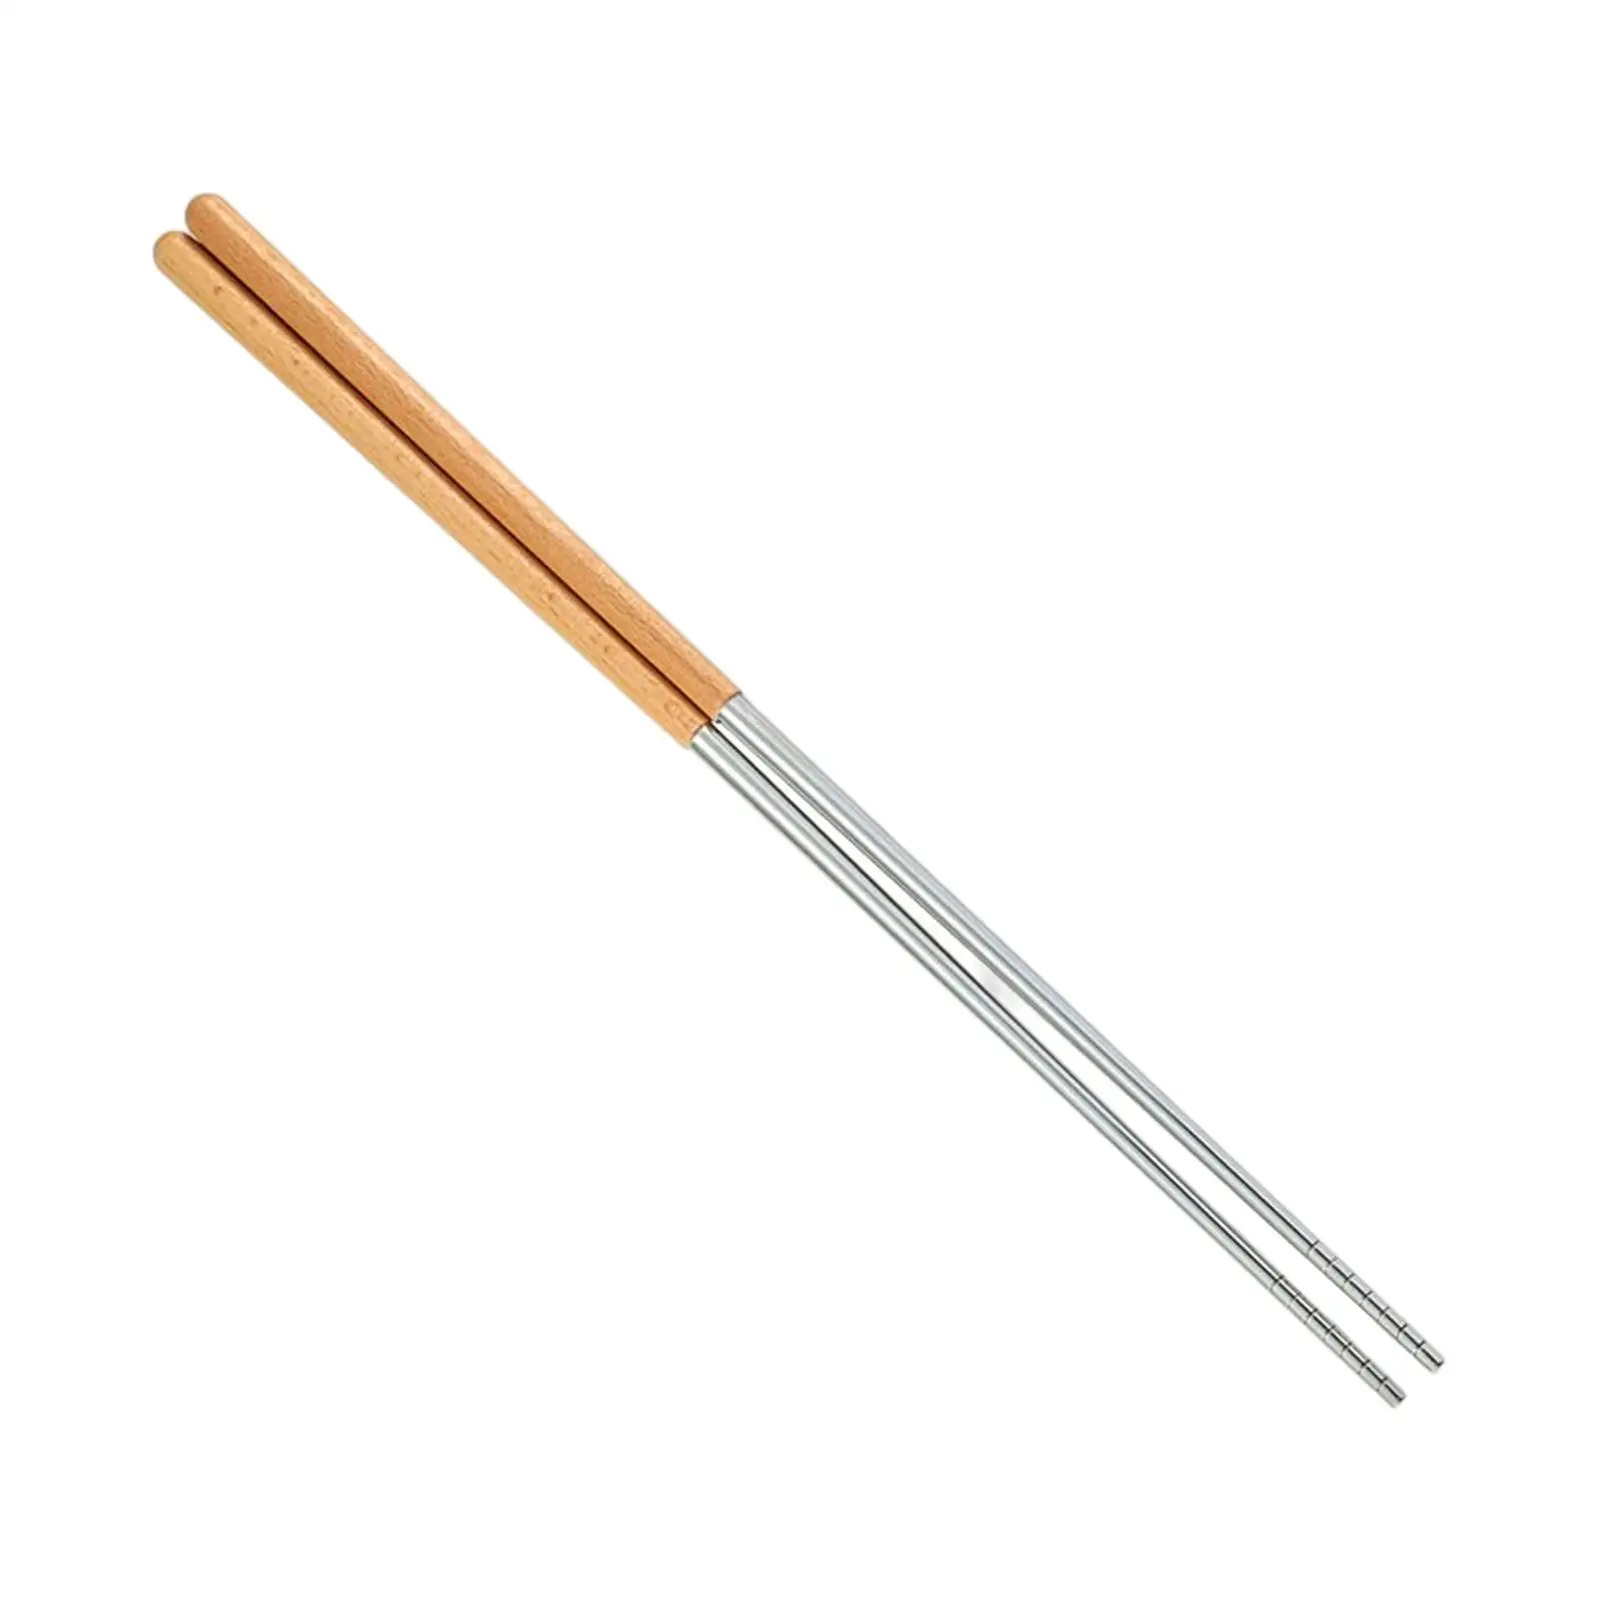 Multipurpose Lengthen Chopsticks Cutlery Cutlery Reusable Stainless Steel